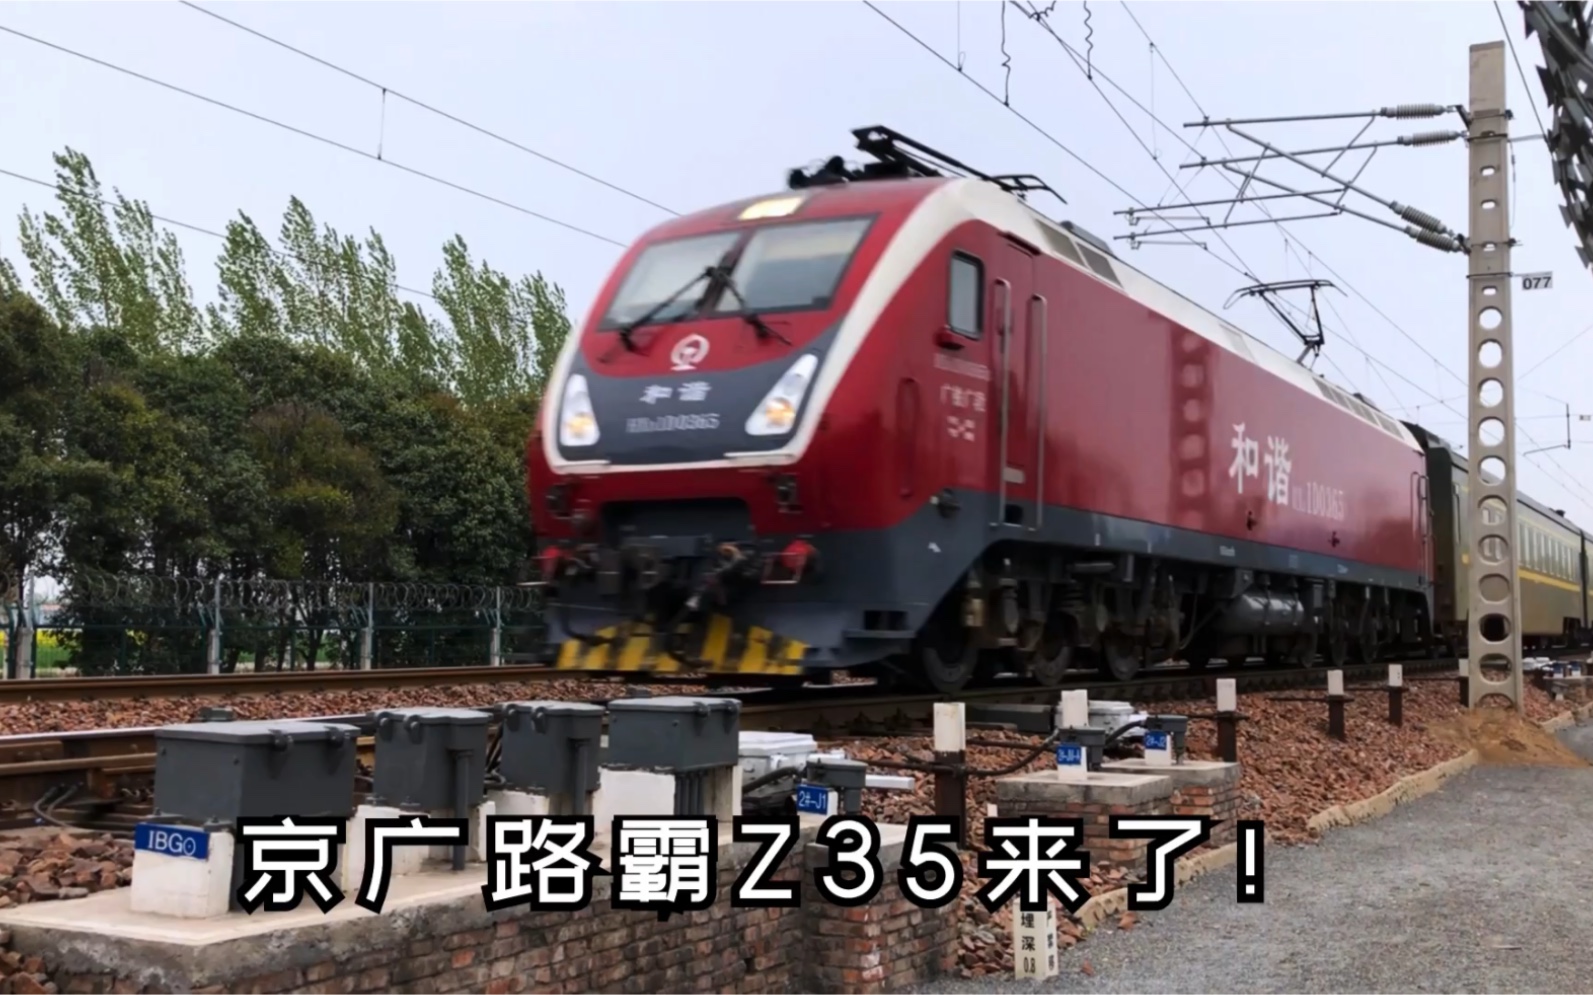 中国铁路京广路霸z35达速轮轨声福利来了